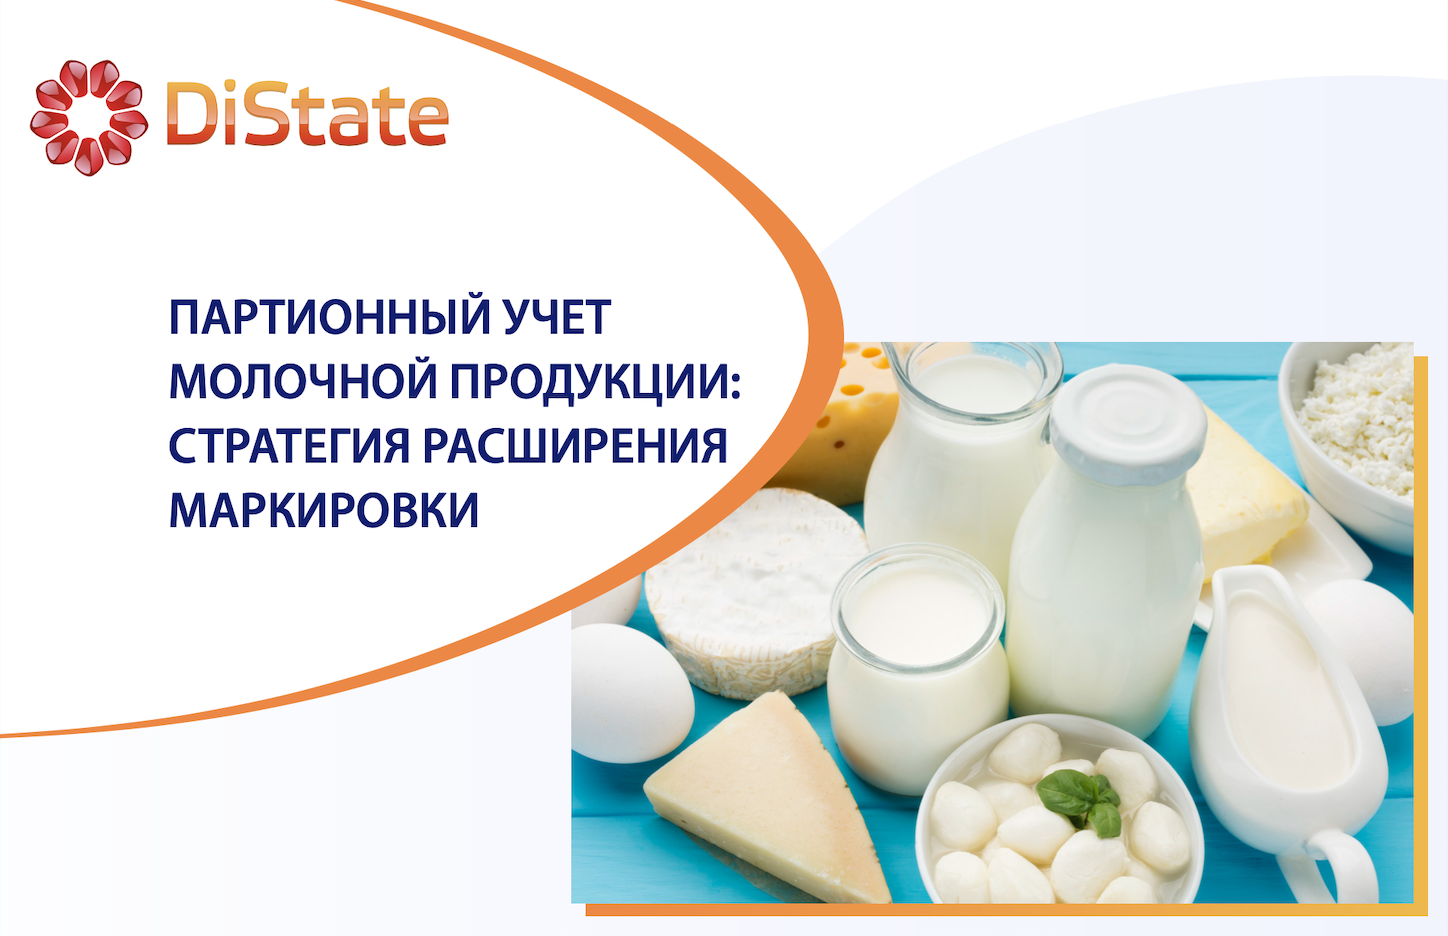 Эксперимент по партионному учету молочной продукции: новый этап контроля качества с использованием маркировки